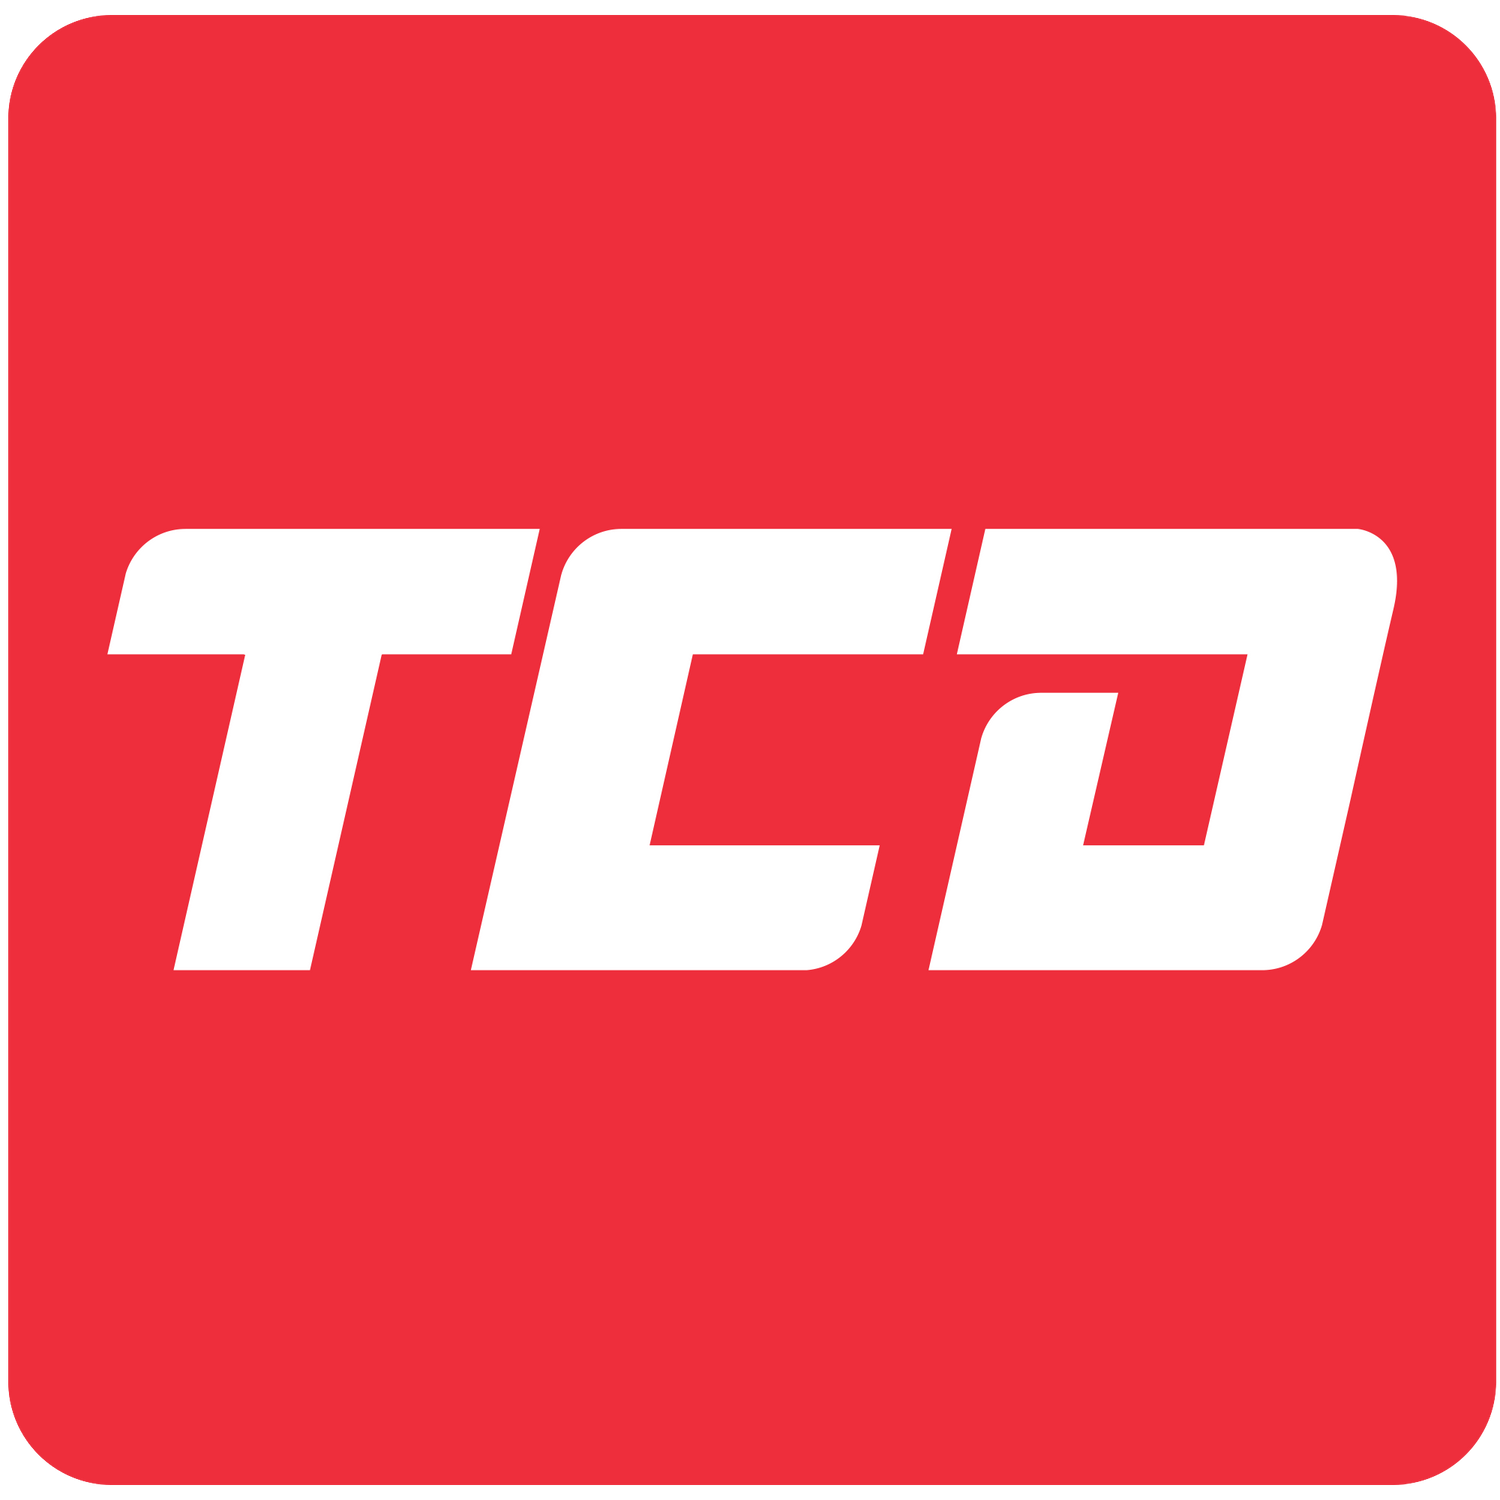 Trade Counter Direct Logo